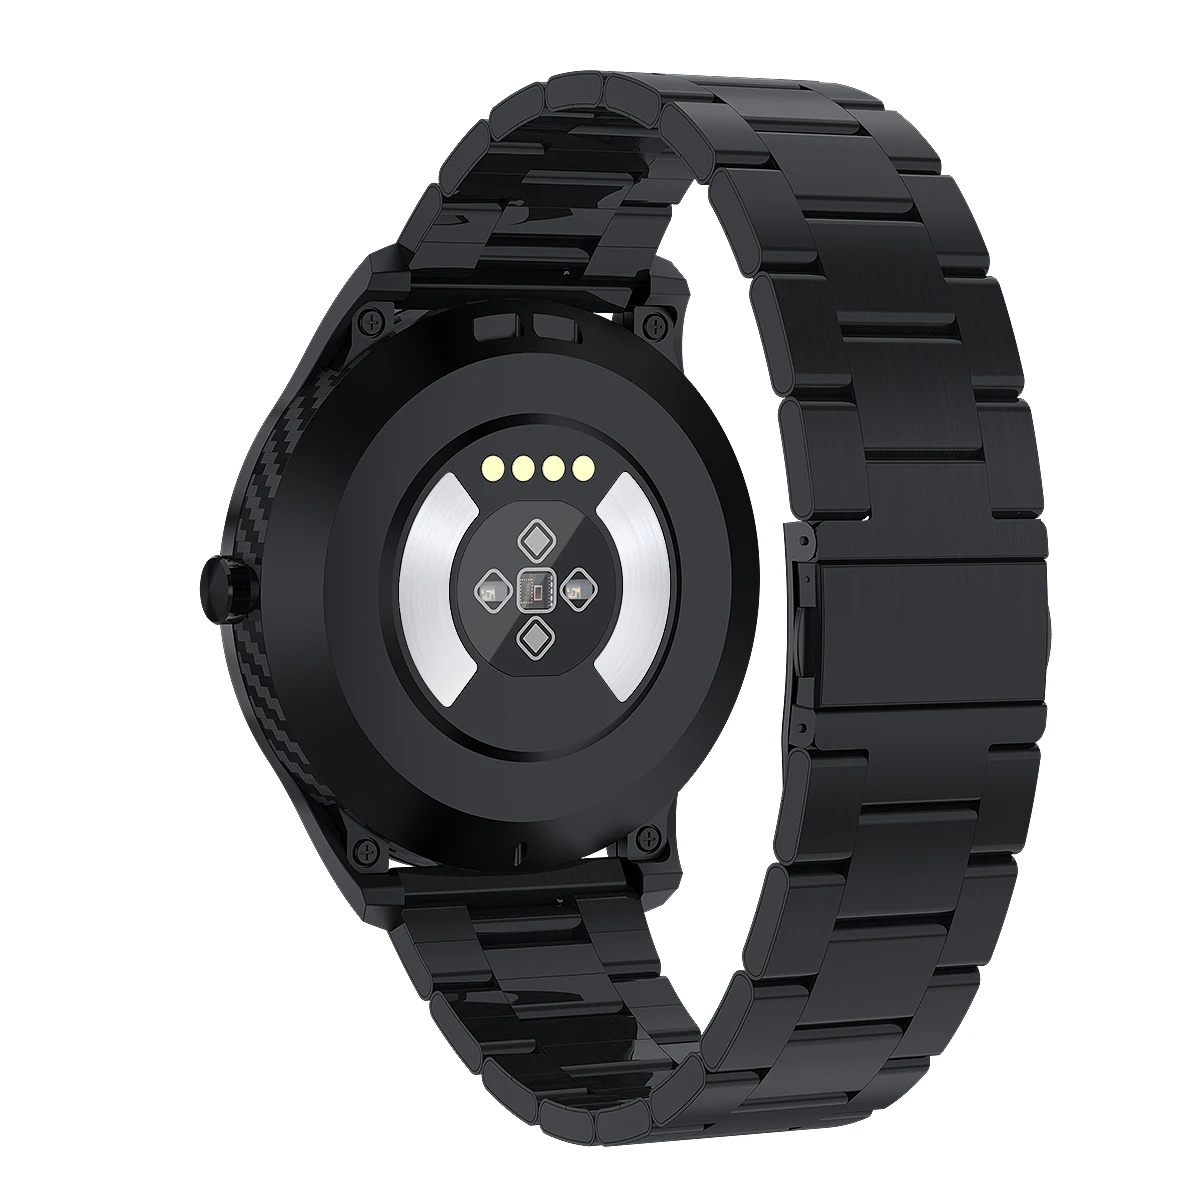 LYKRY DT98 Смарт-часы ремешок подлинный ремешок для DT98 браслет ремень спортивный фитнес-браслет аксессуары